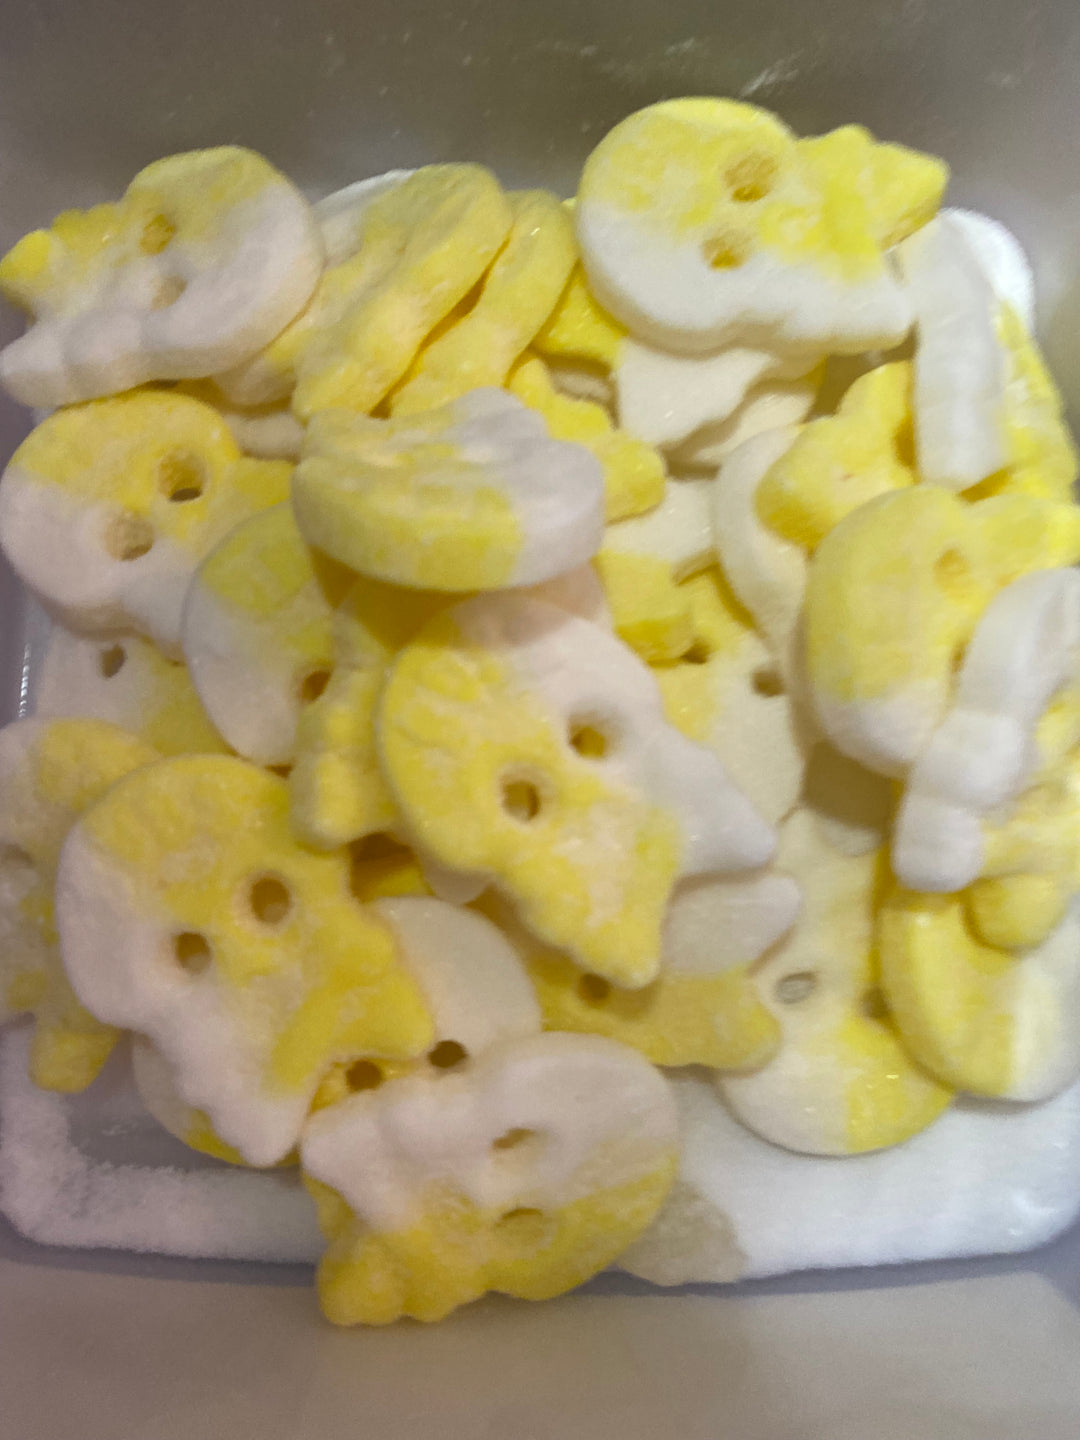 BUBS Pineapple Lemon sour skulls 0.33